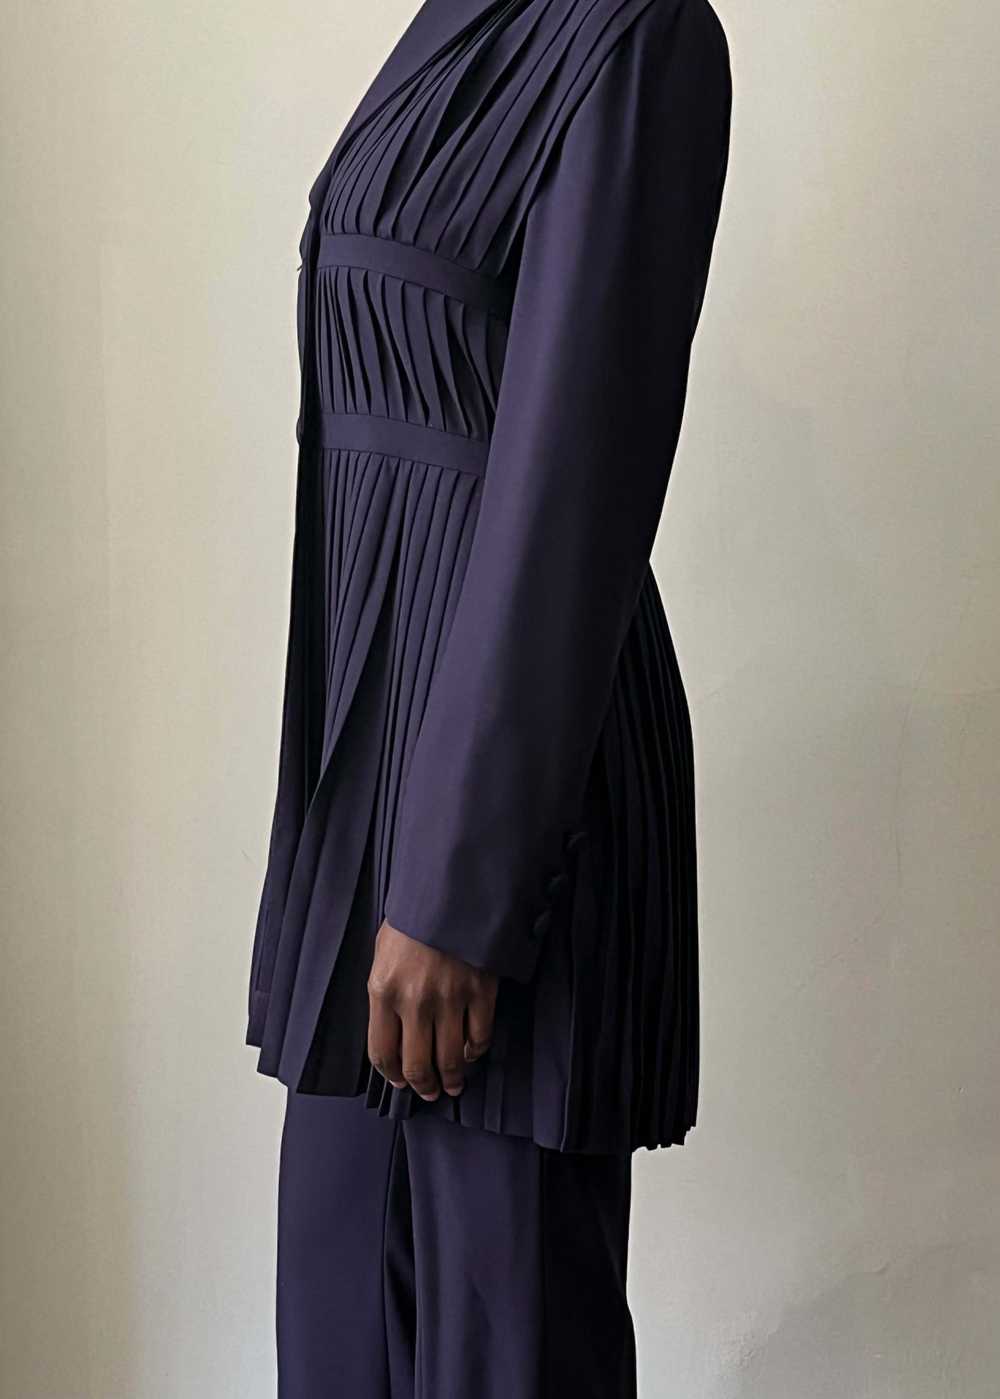 Jacques Molko Paris purple wool pleated pant suit - image 5